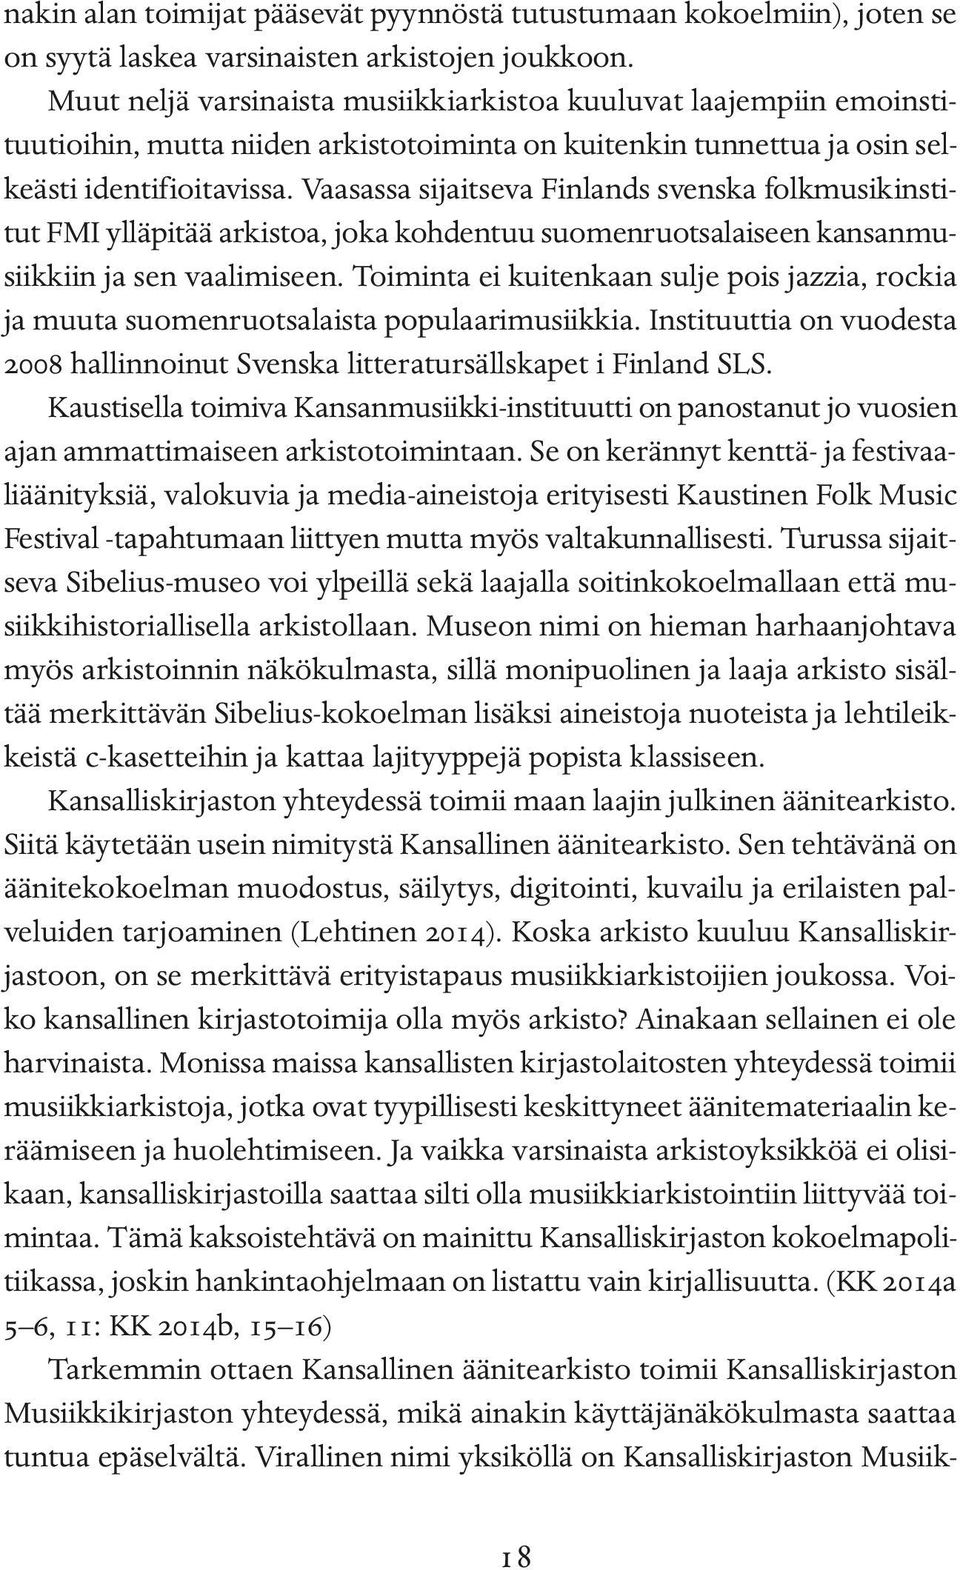 Vaasassa sijaitseva Finlands svenska folkmusikinstitut FMI ylläpitää arkistoa, joka kohdentuu suomenruotsalaiseen kansanmusiikkiin ja sen vaalimiseen.